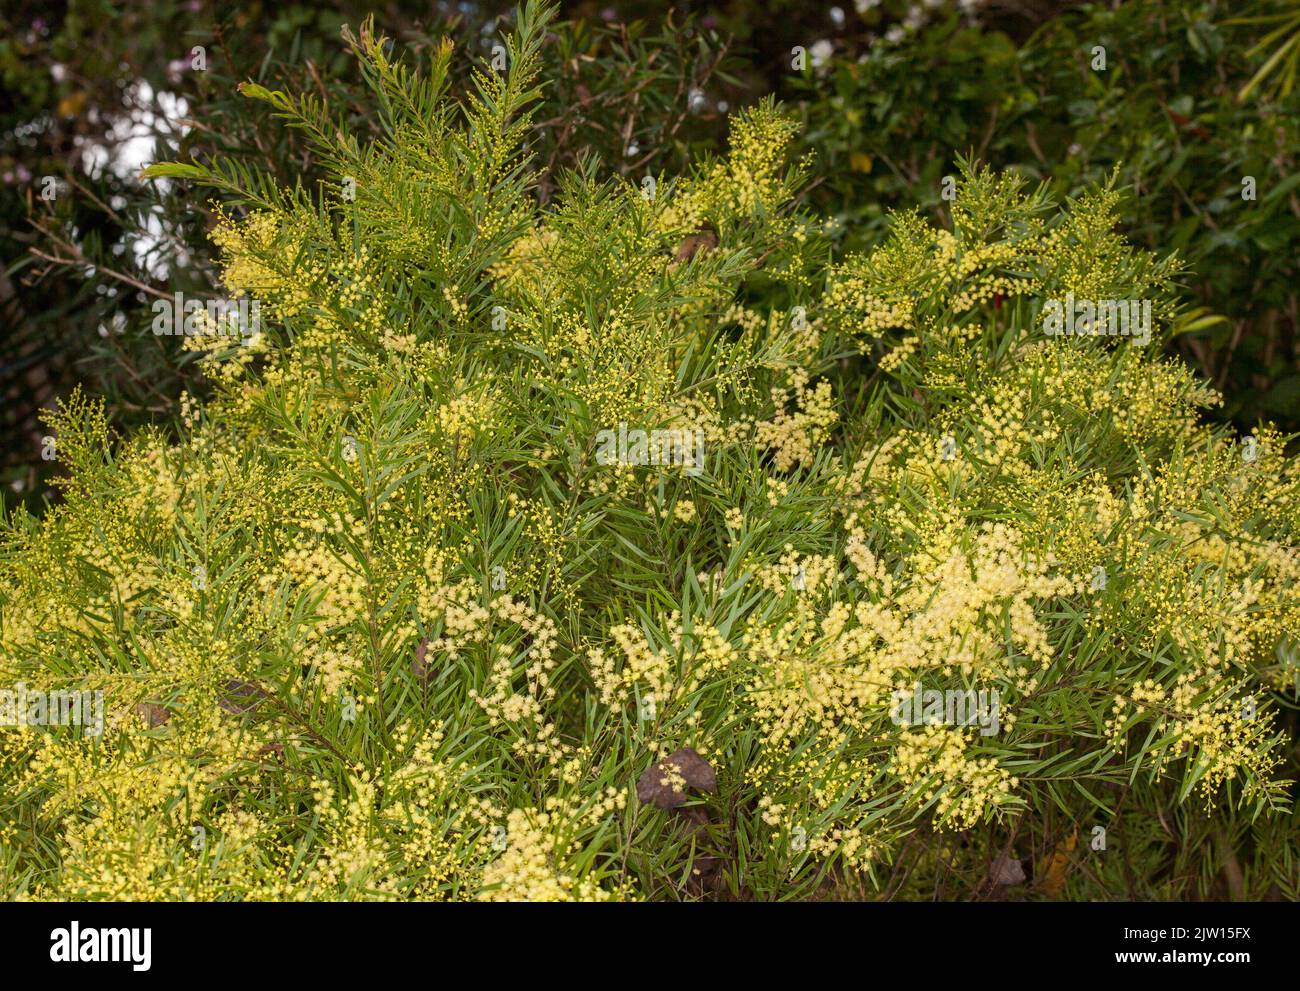 Acacia fimbriata, Brisbane Wattle, un albero nativo australiano / arbusto, coperto con masse di fiori profumati giallo dorato Foto Stock